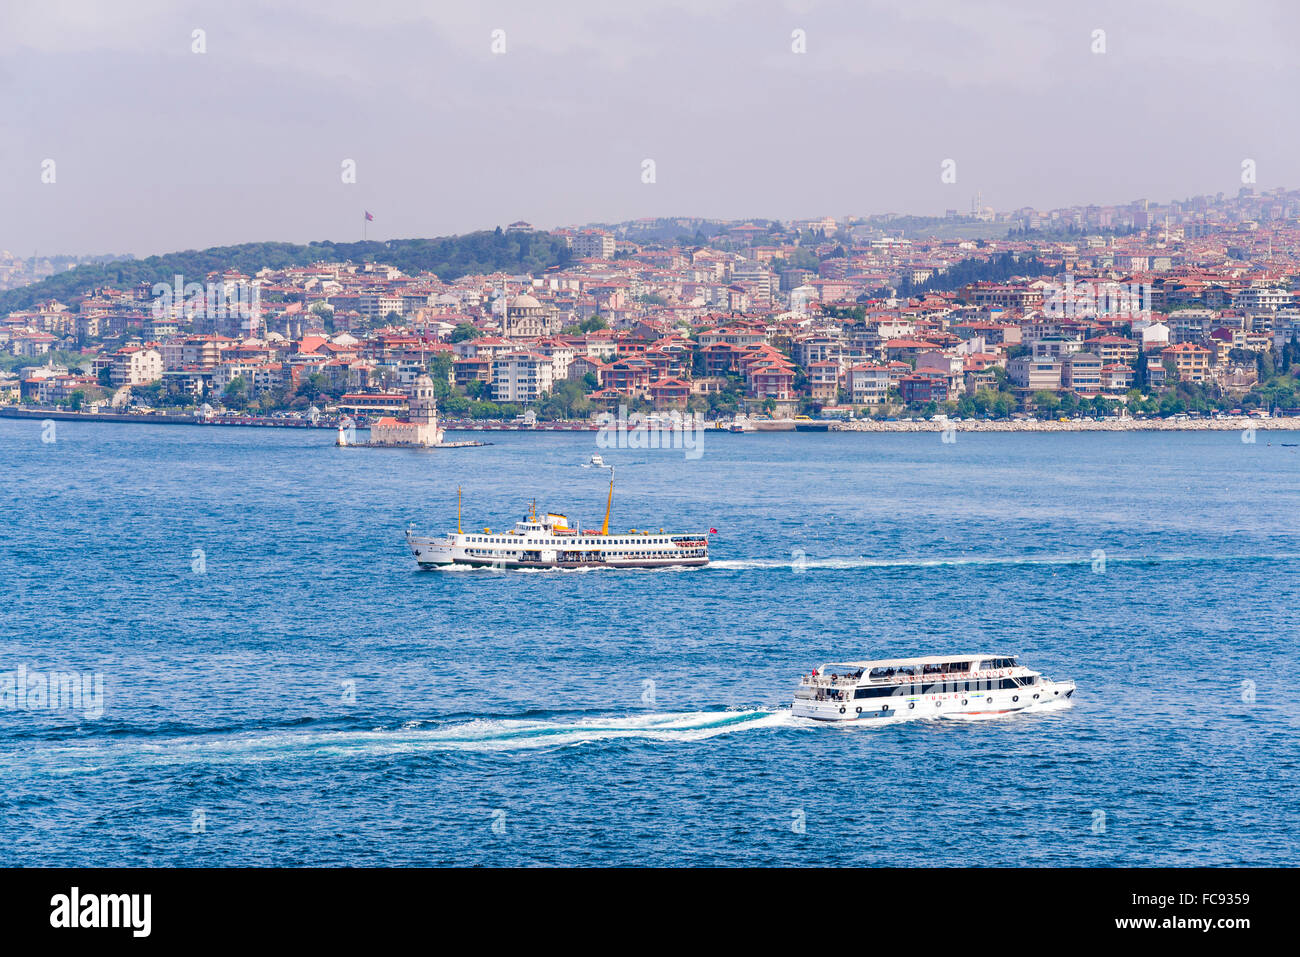 El lado asiático de Estambul, cruzando el Estrecho del Bósforo visto desde el Palacio Topkapi, en Estambul, Turquía, Europa Foto de stock